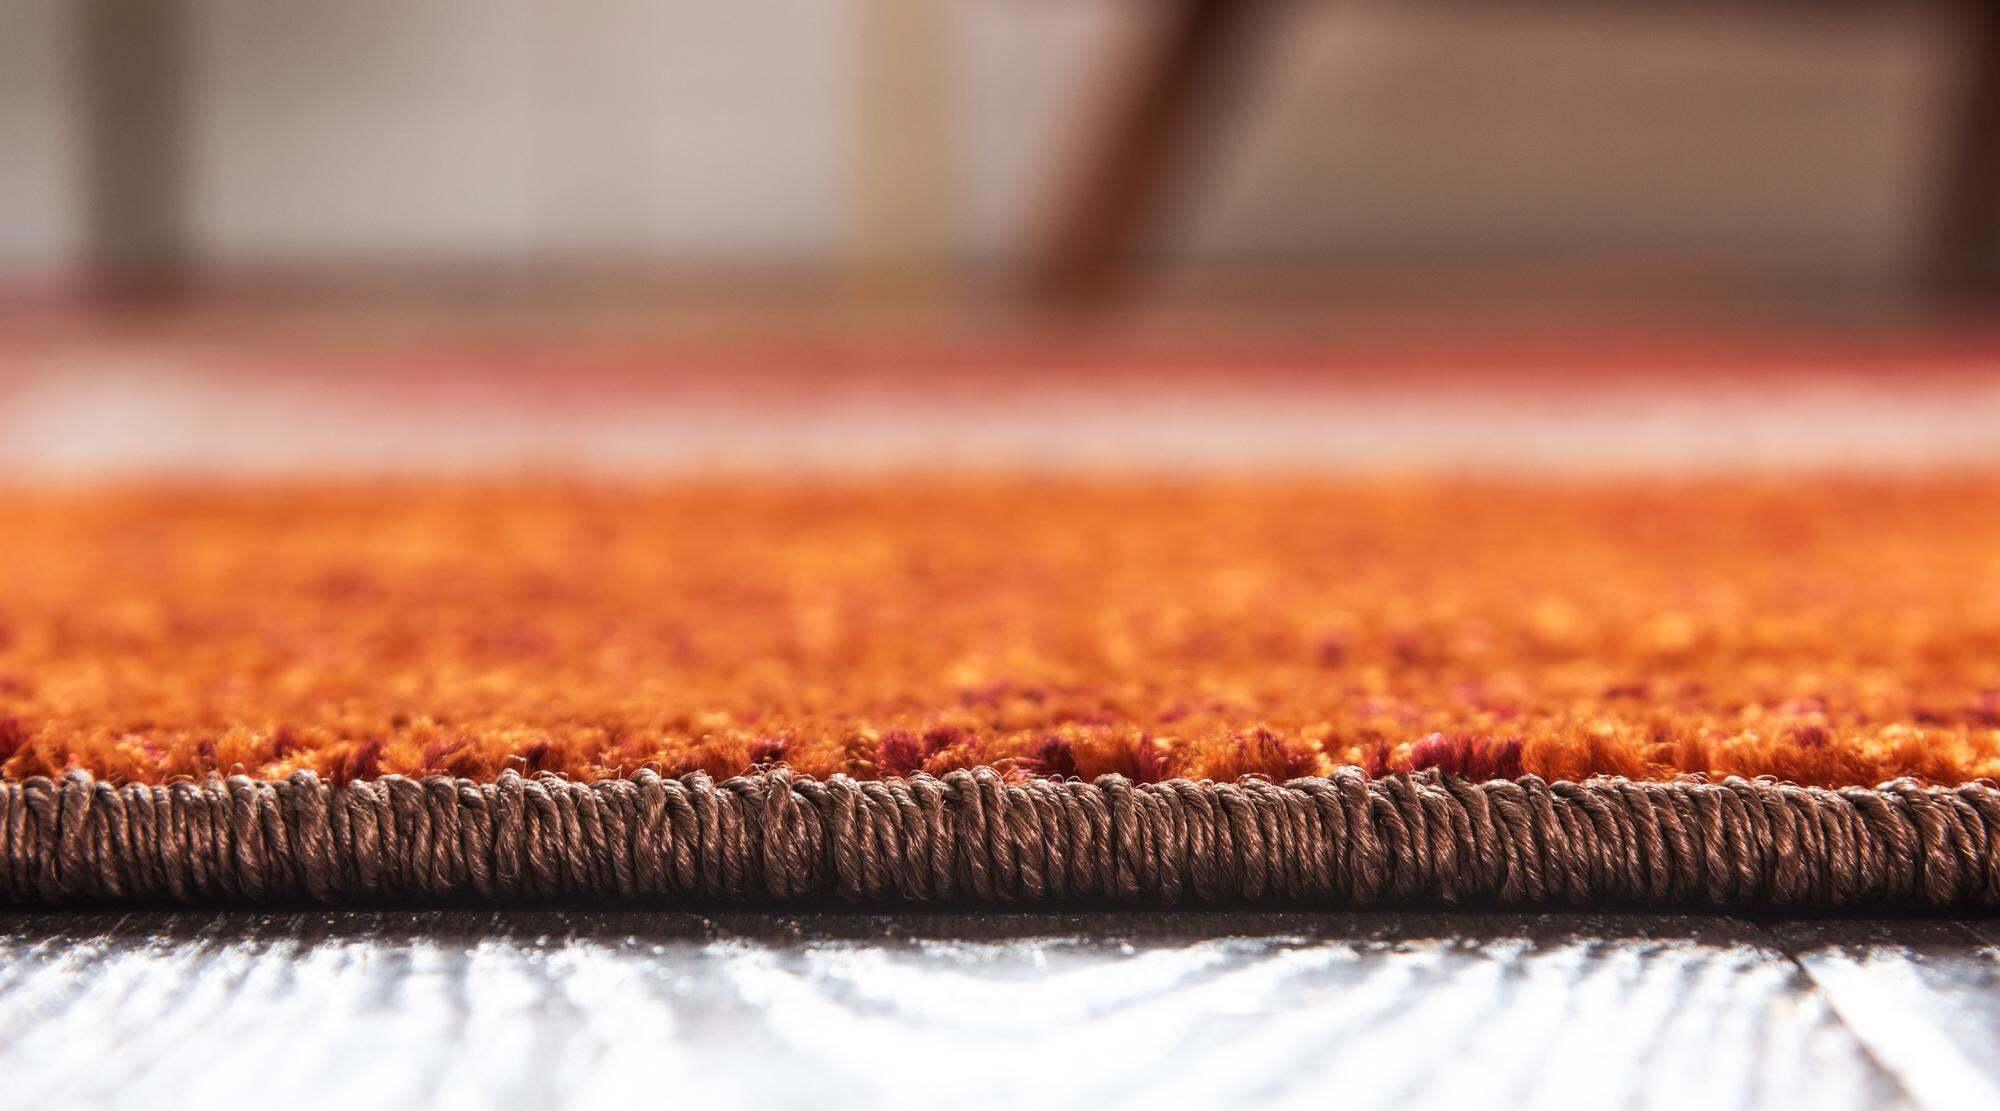 Unique Loom Indoor Rugs - Autumn Geometric 4x6 Rectangular Rug Multi & Dark Brown